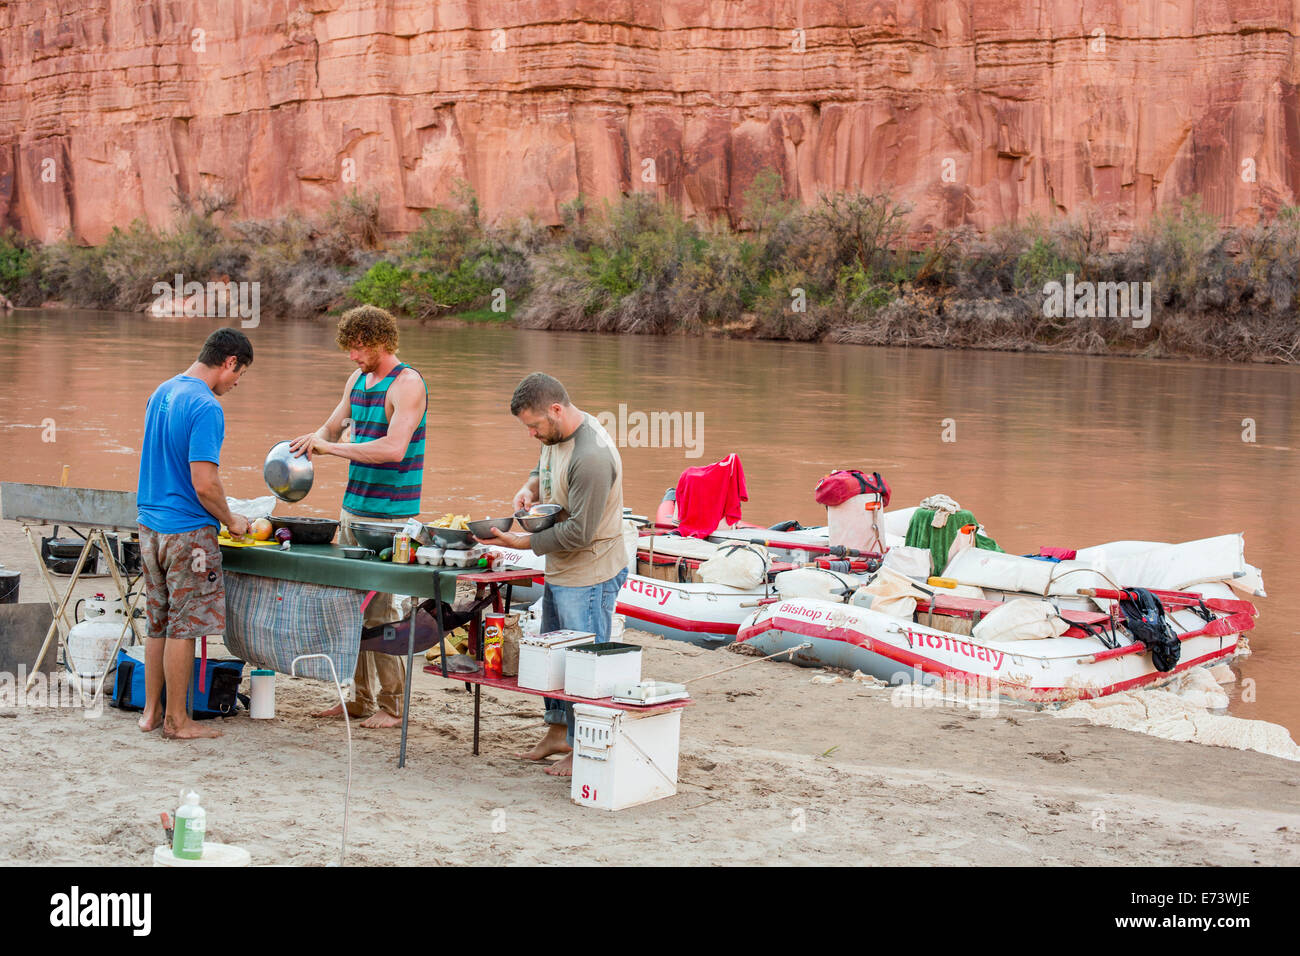 Canyonlands National Park, Utah - River Guides bereiten Sie eine Mahlzeit während einer Floßfahrt auf dem Colorado River Stockfoto